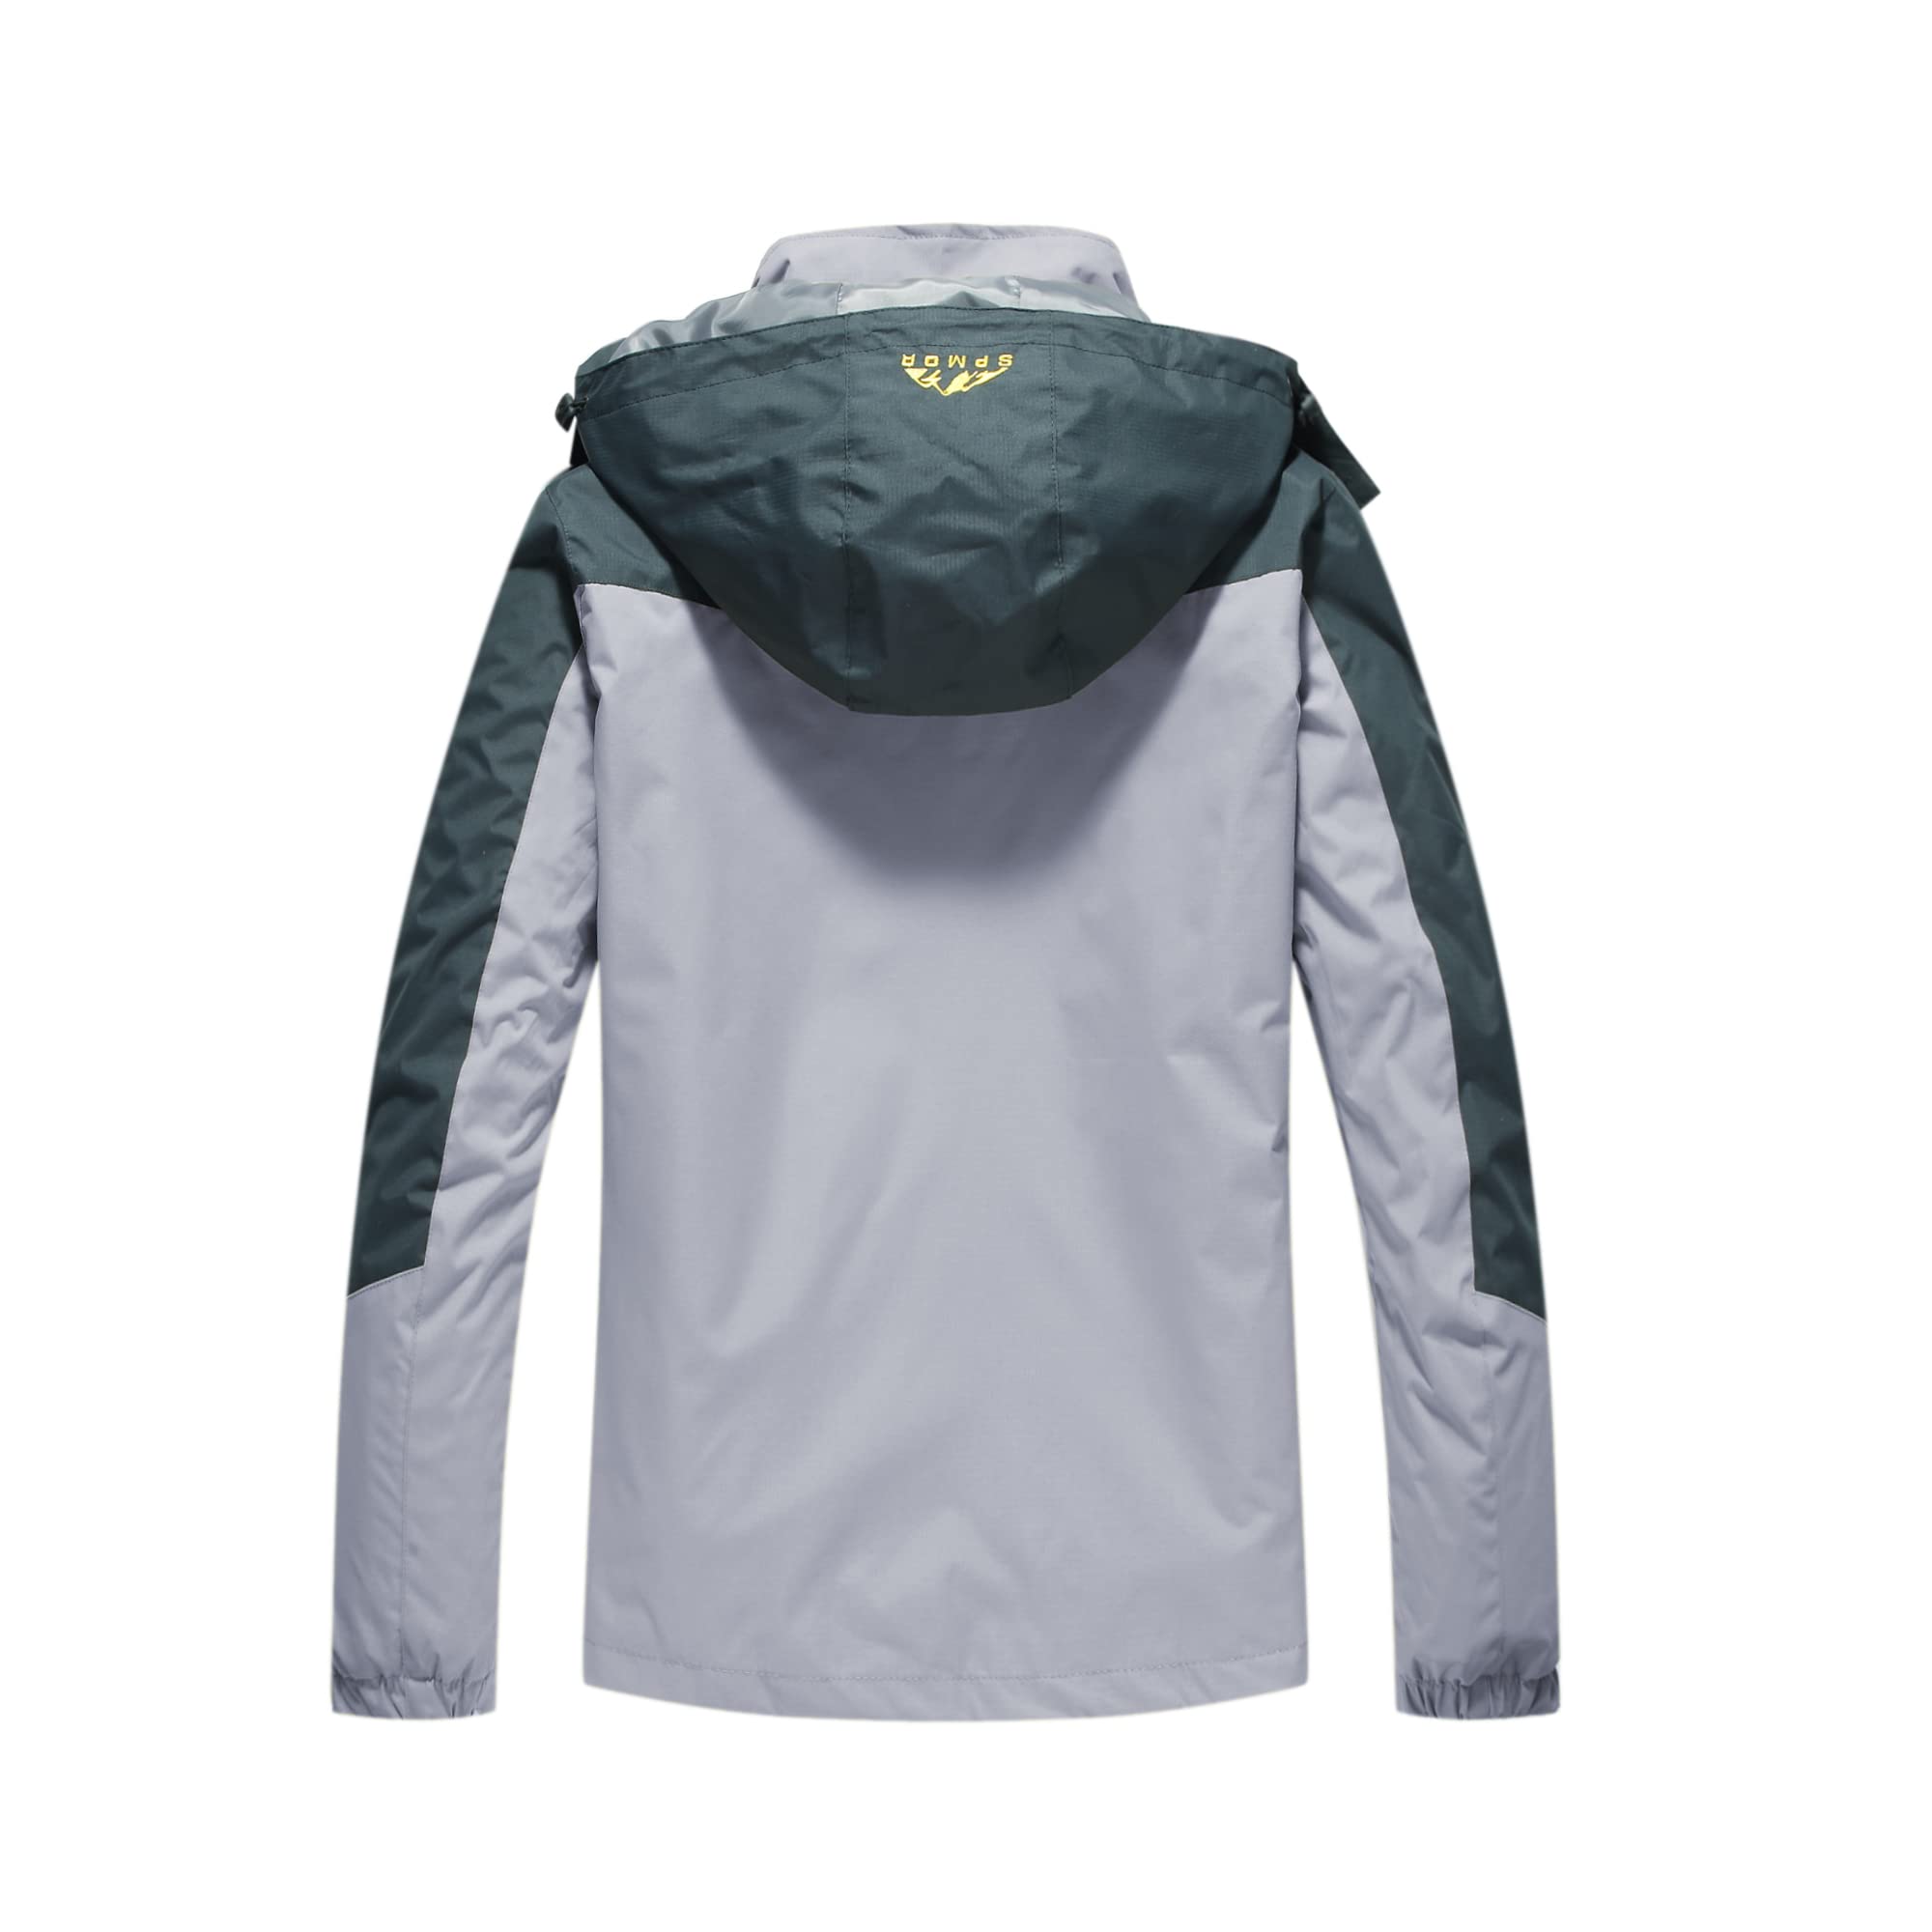 Spmor Women's Waterproof Rain Jacket Cycling Windproof Breathable Hooded Windbreaker Grey Small